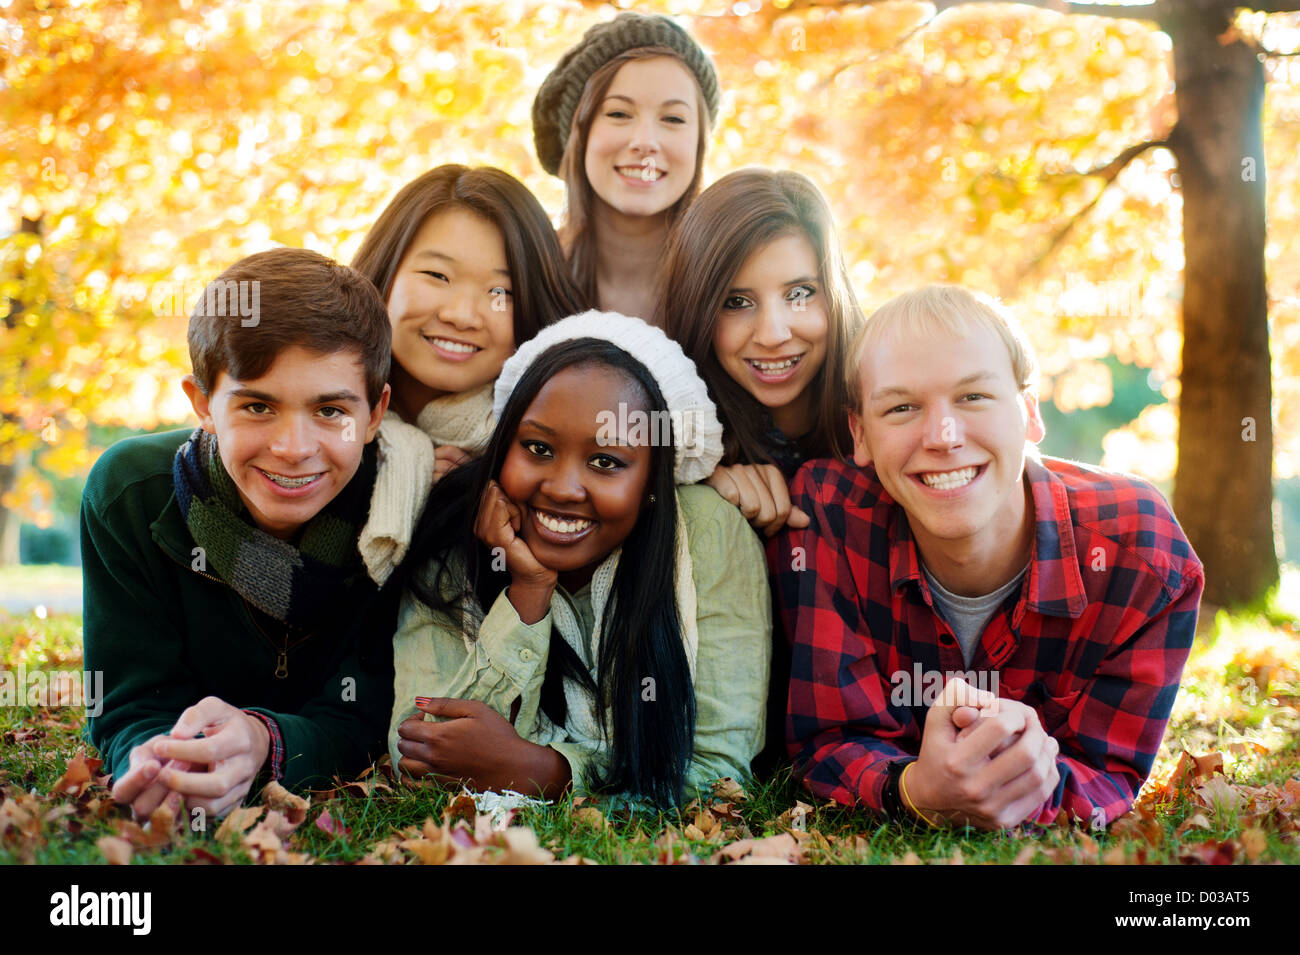 Groupe diversifié de smiling friends dans une pyramide en automne Banque D'Images